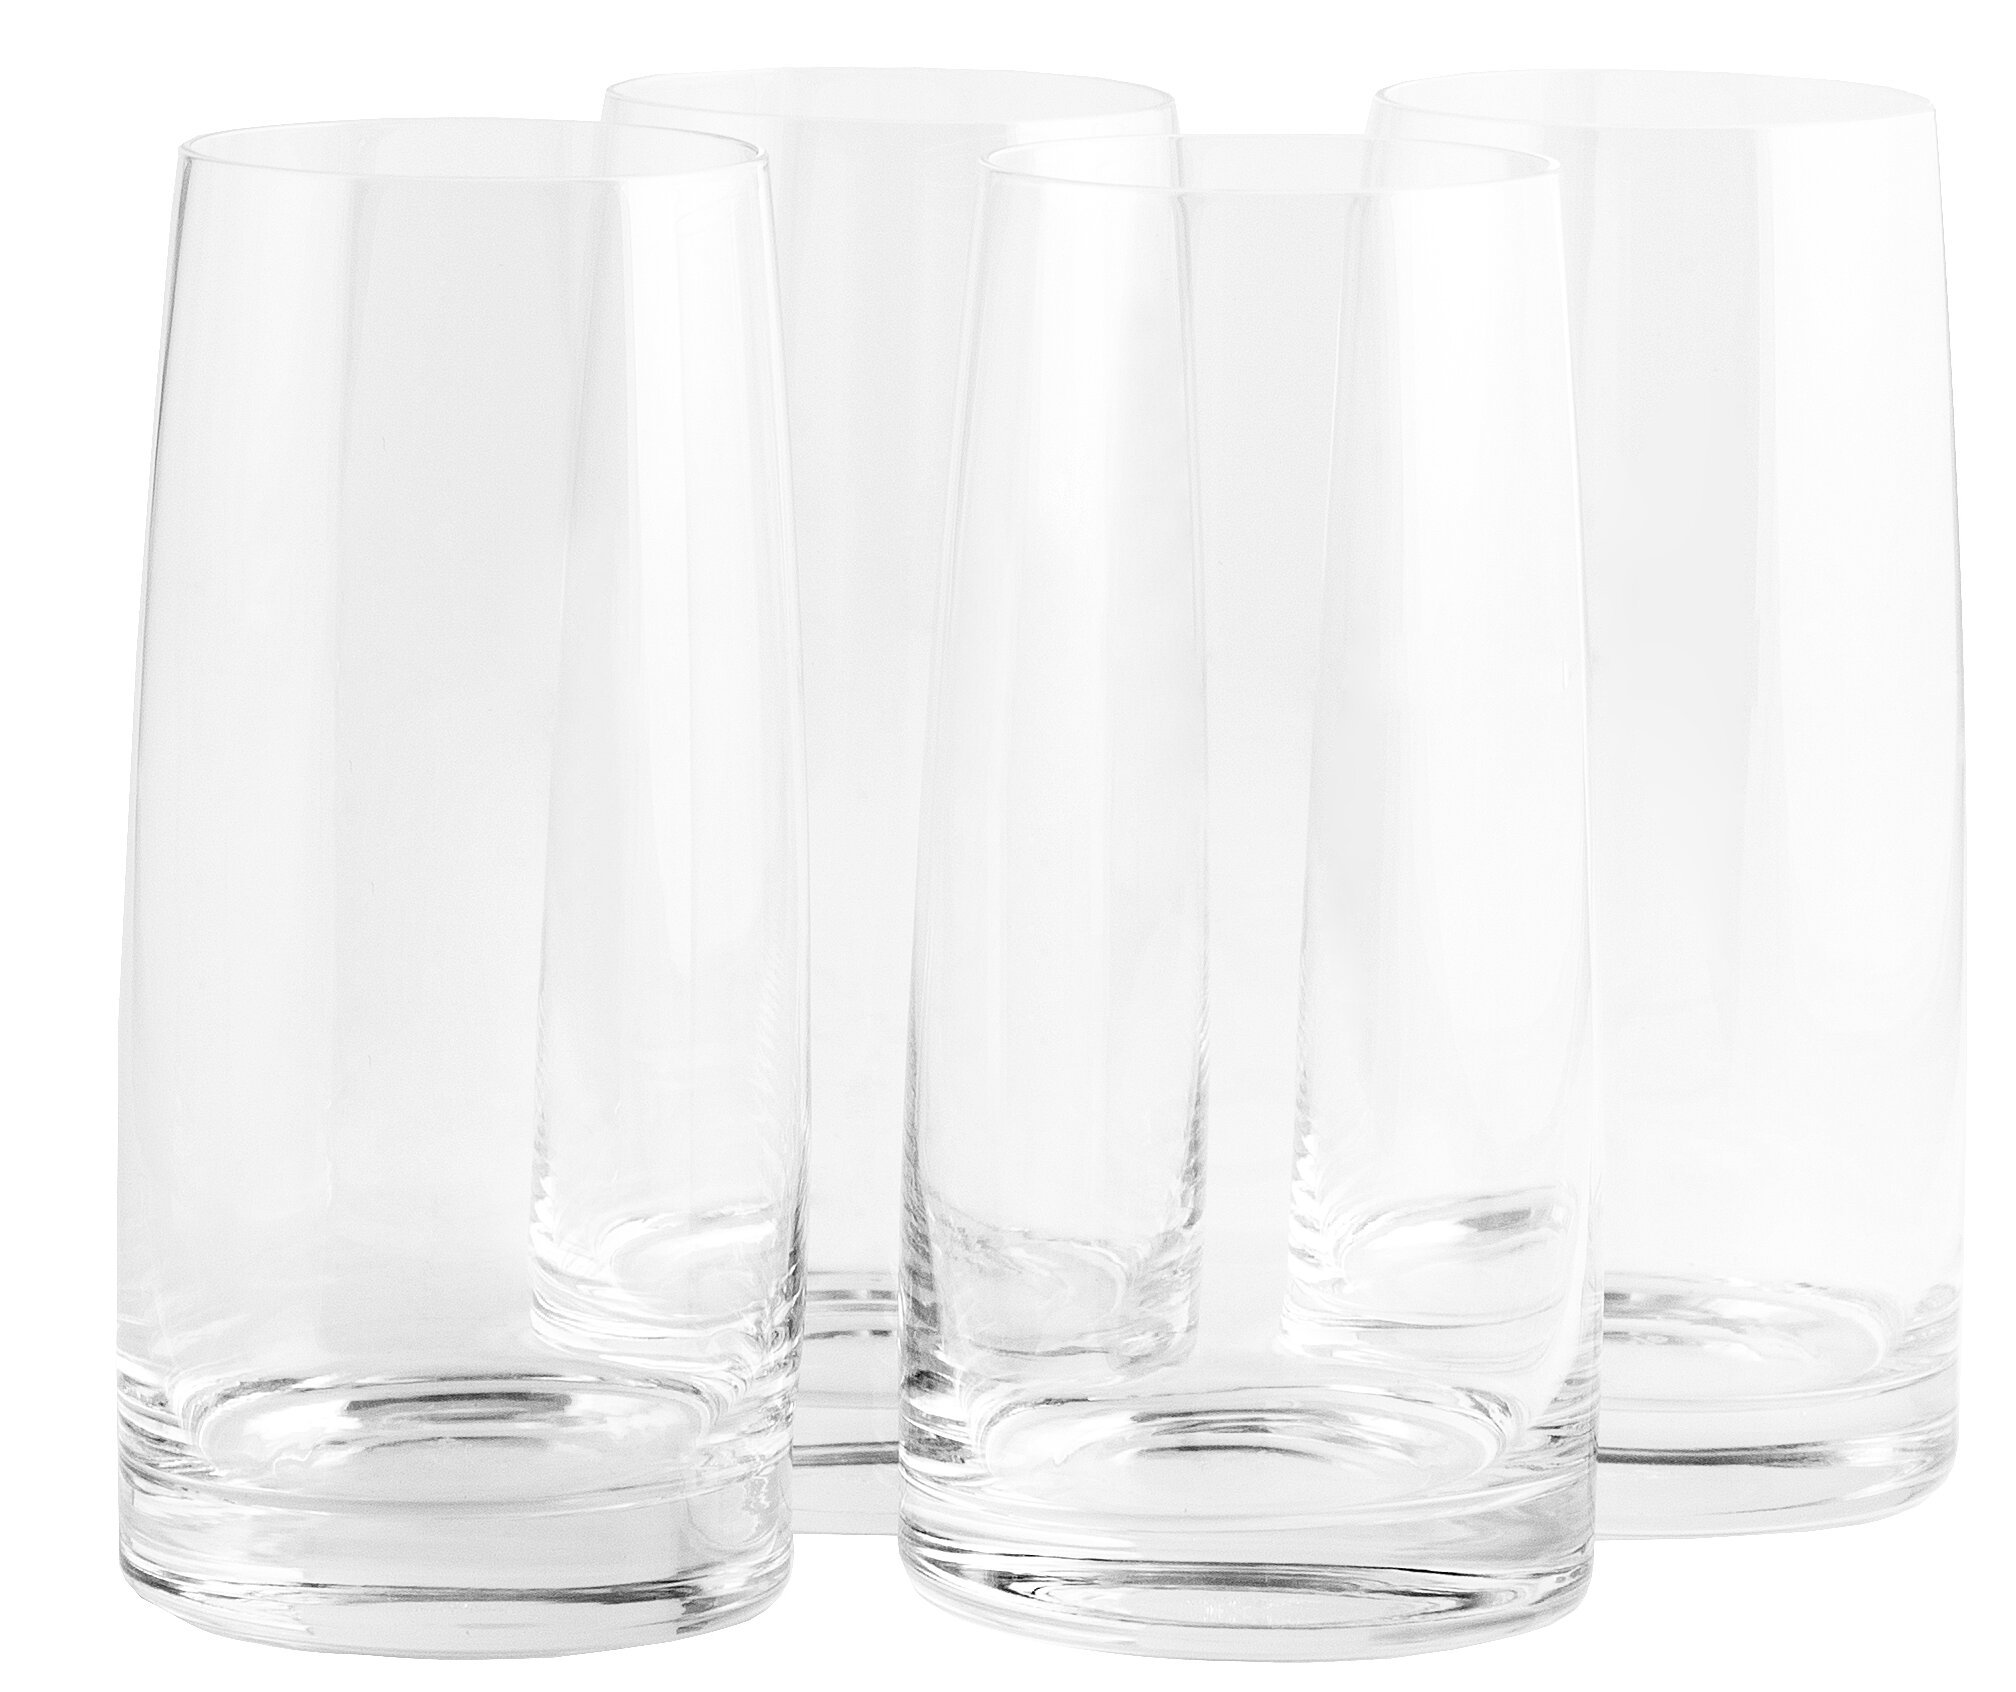 Lenox Tuscany Classics (4) 16-oz Cylinder Highball Glasses